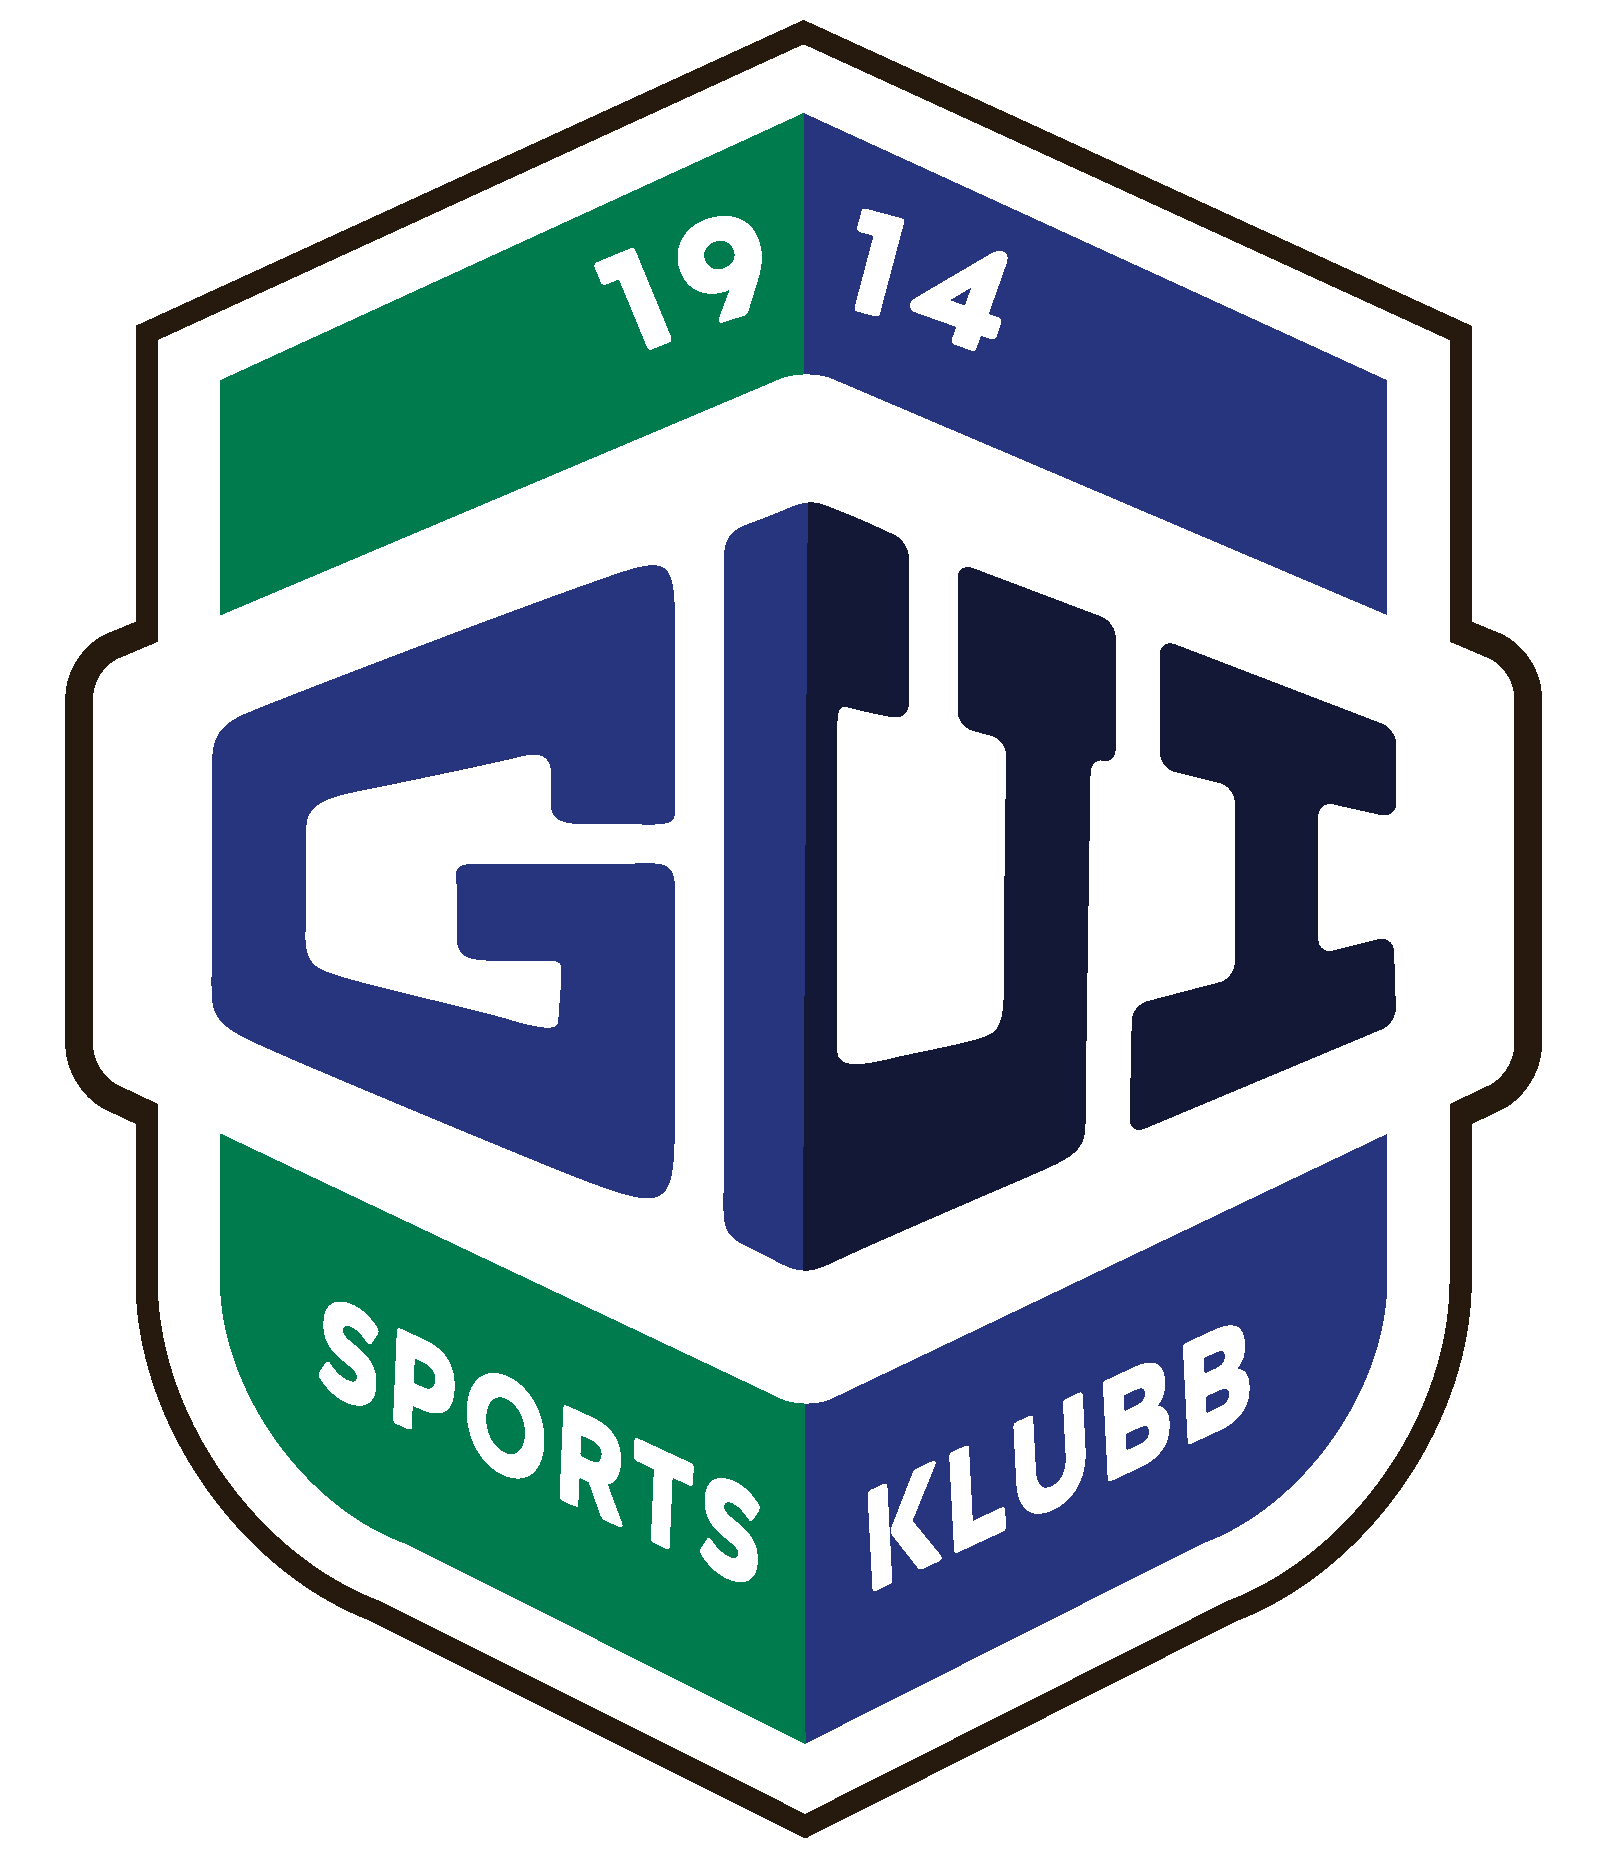 Gui Sportsklubb